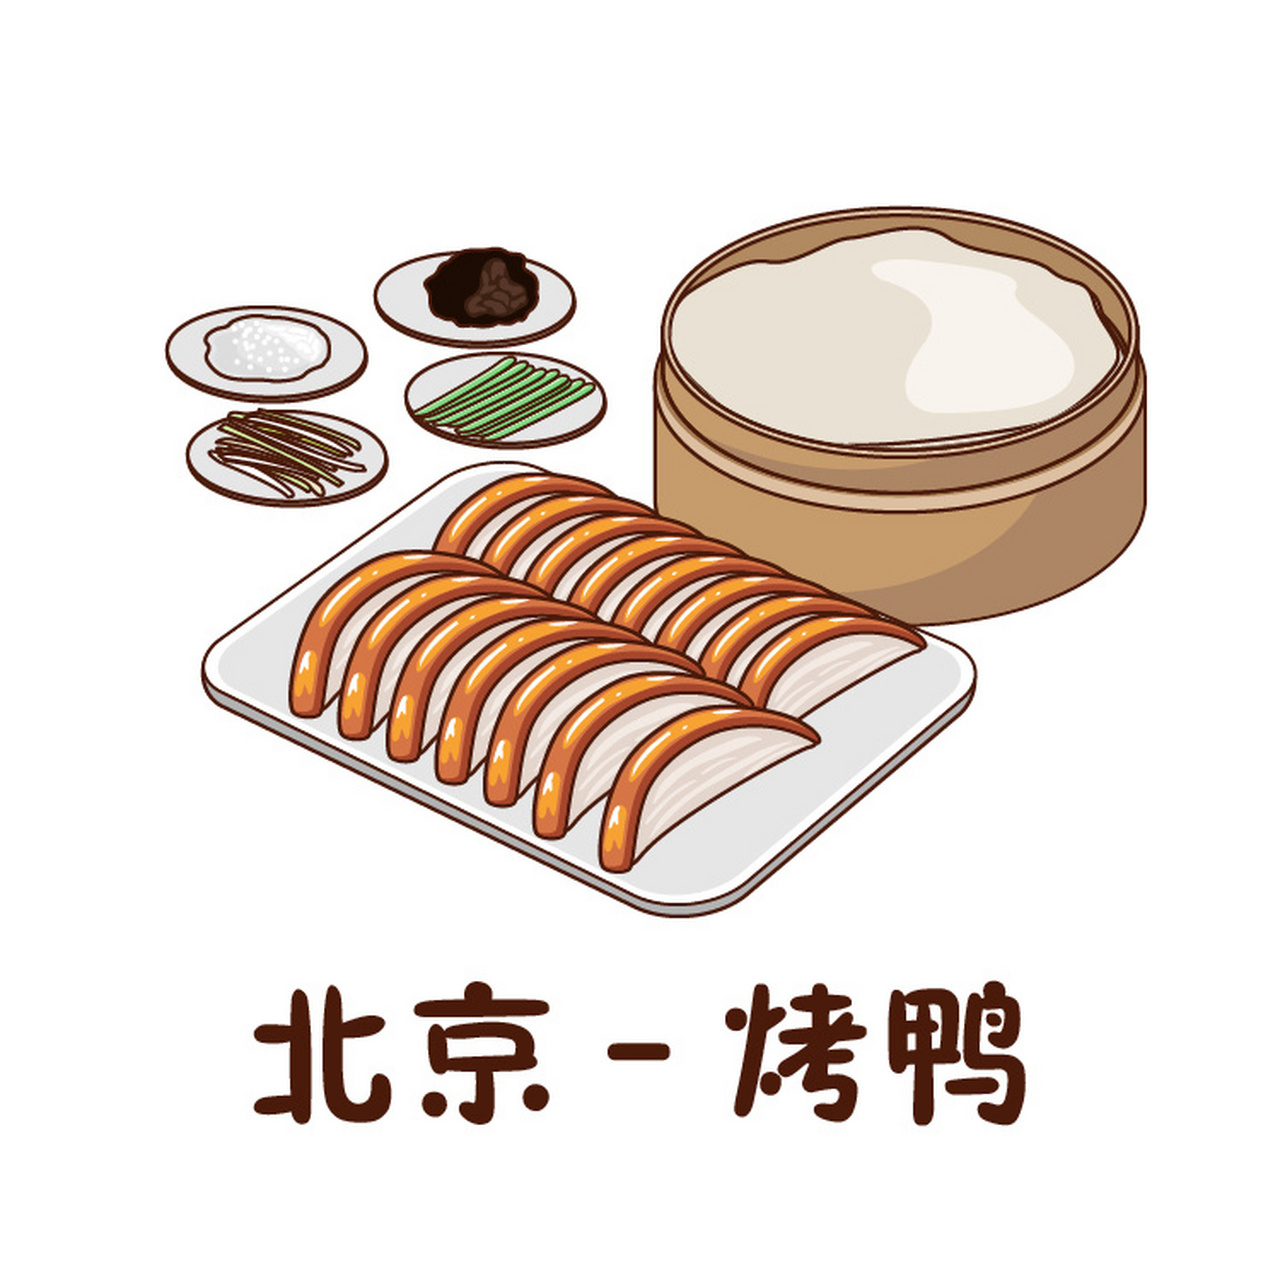 中国美食简笔画 食物图片